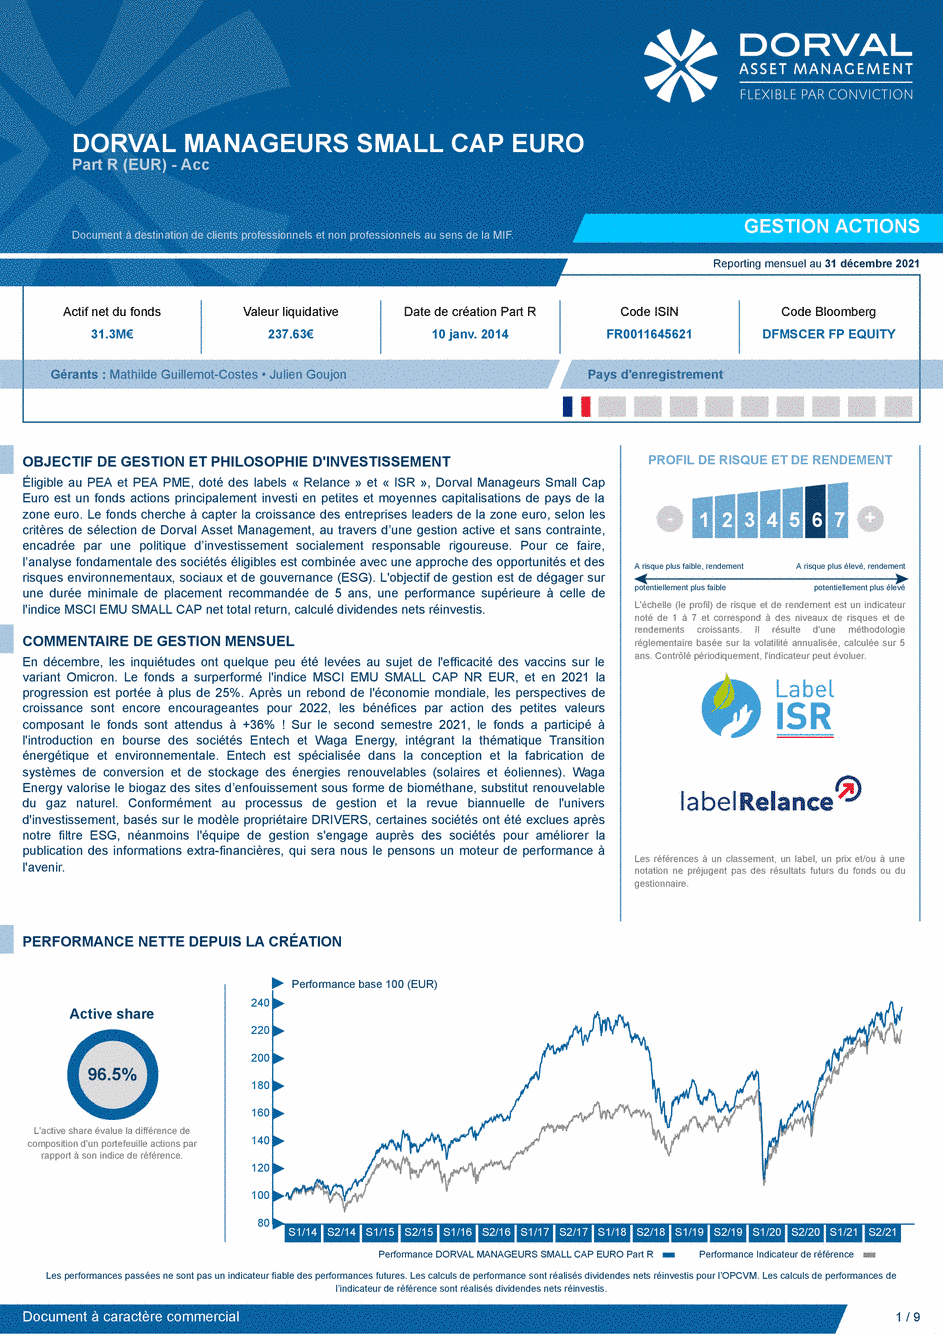 Reporting DORVAL MANAGEURS SMALL CAP EURO Part C - 31/12/2021 - Français